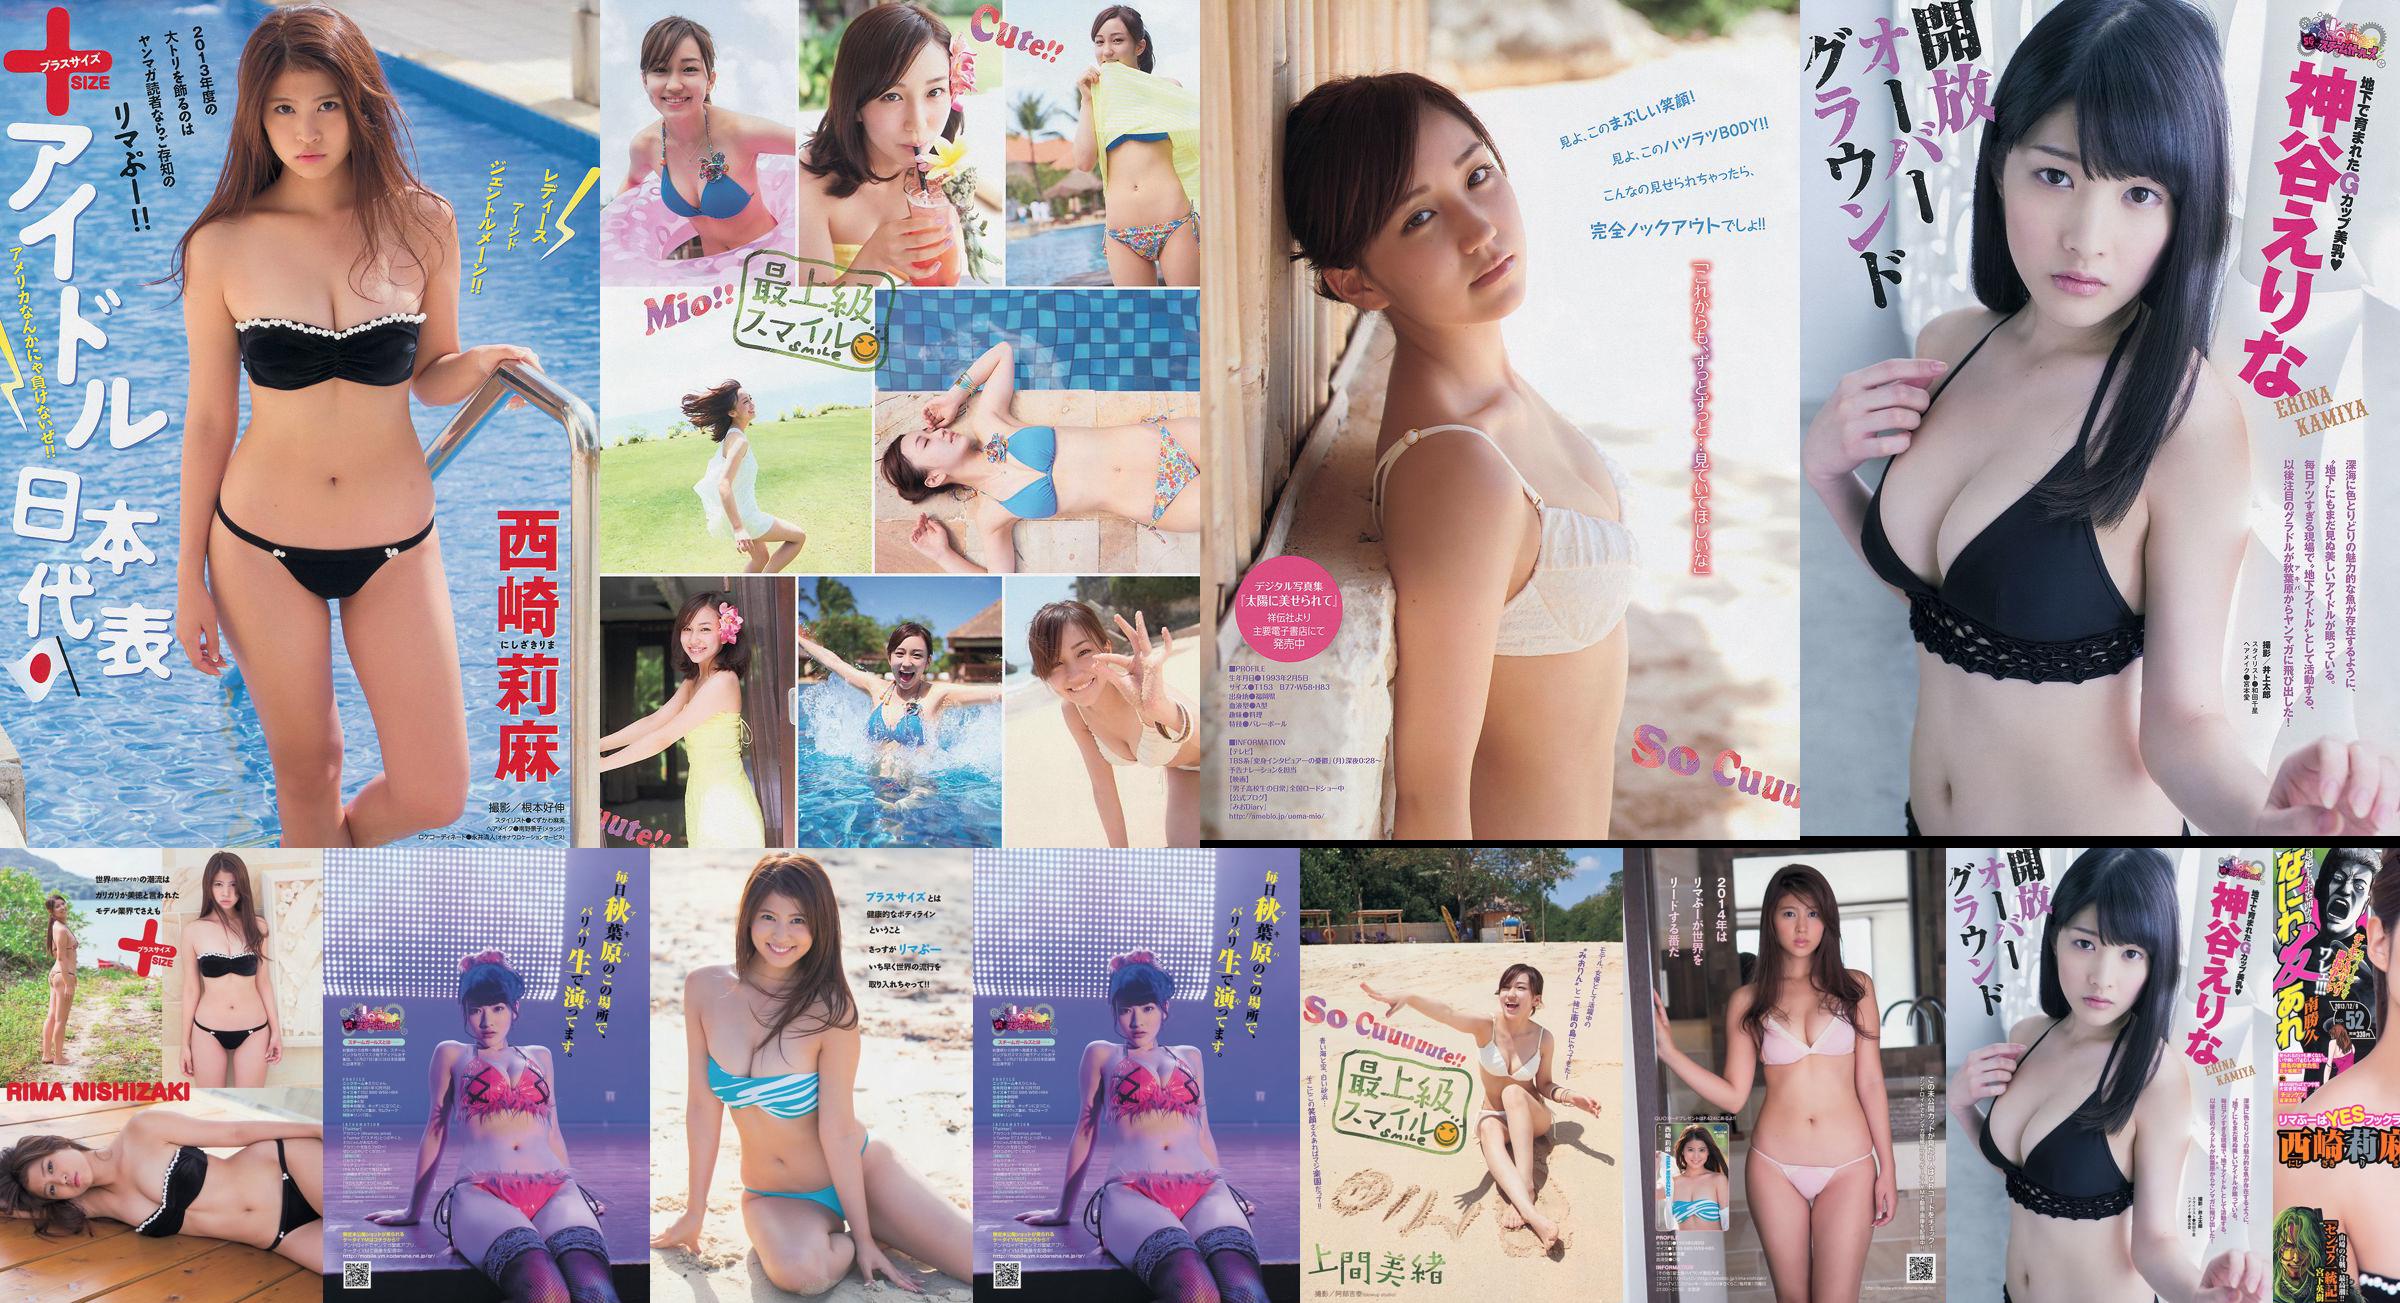 [Revista joven] Rima Nishizaki Mio Uema Erina Kamiya 2013 No.52 Photo Moshi No.f22b01 Página 5